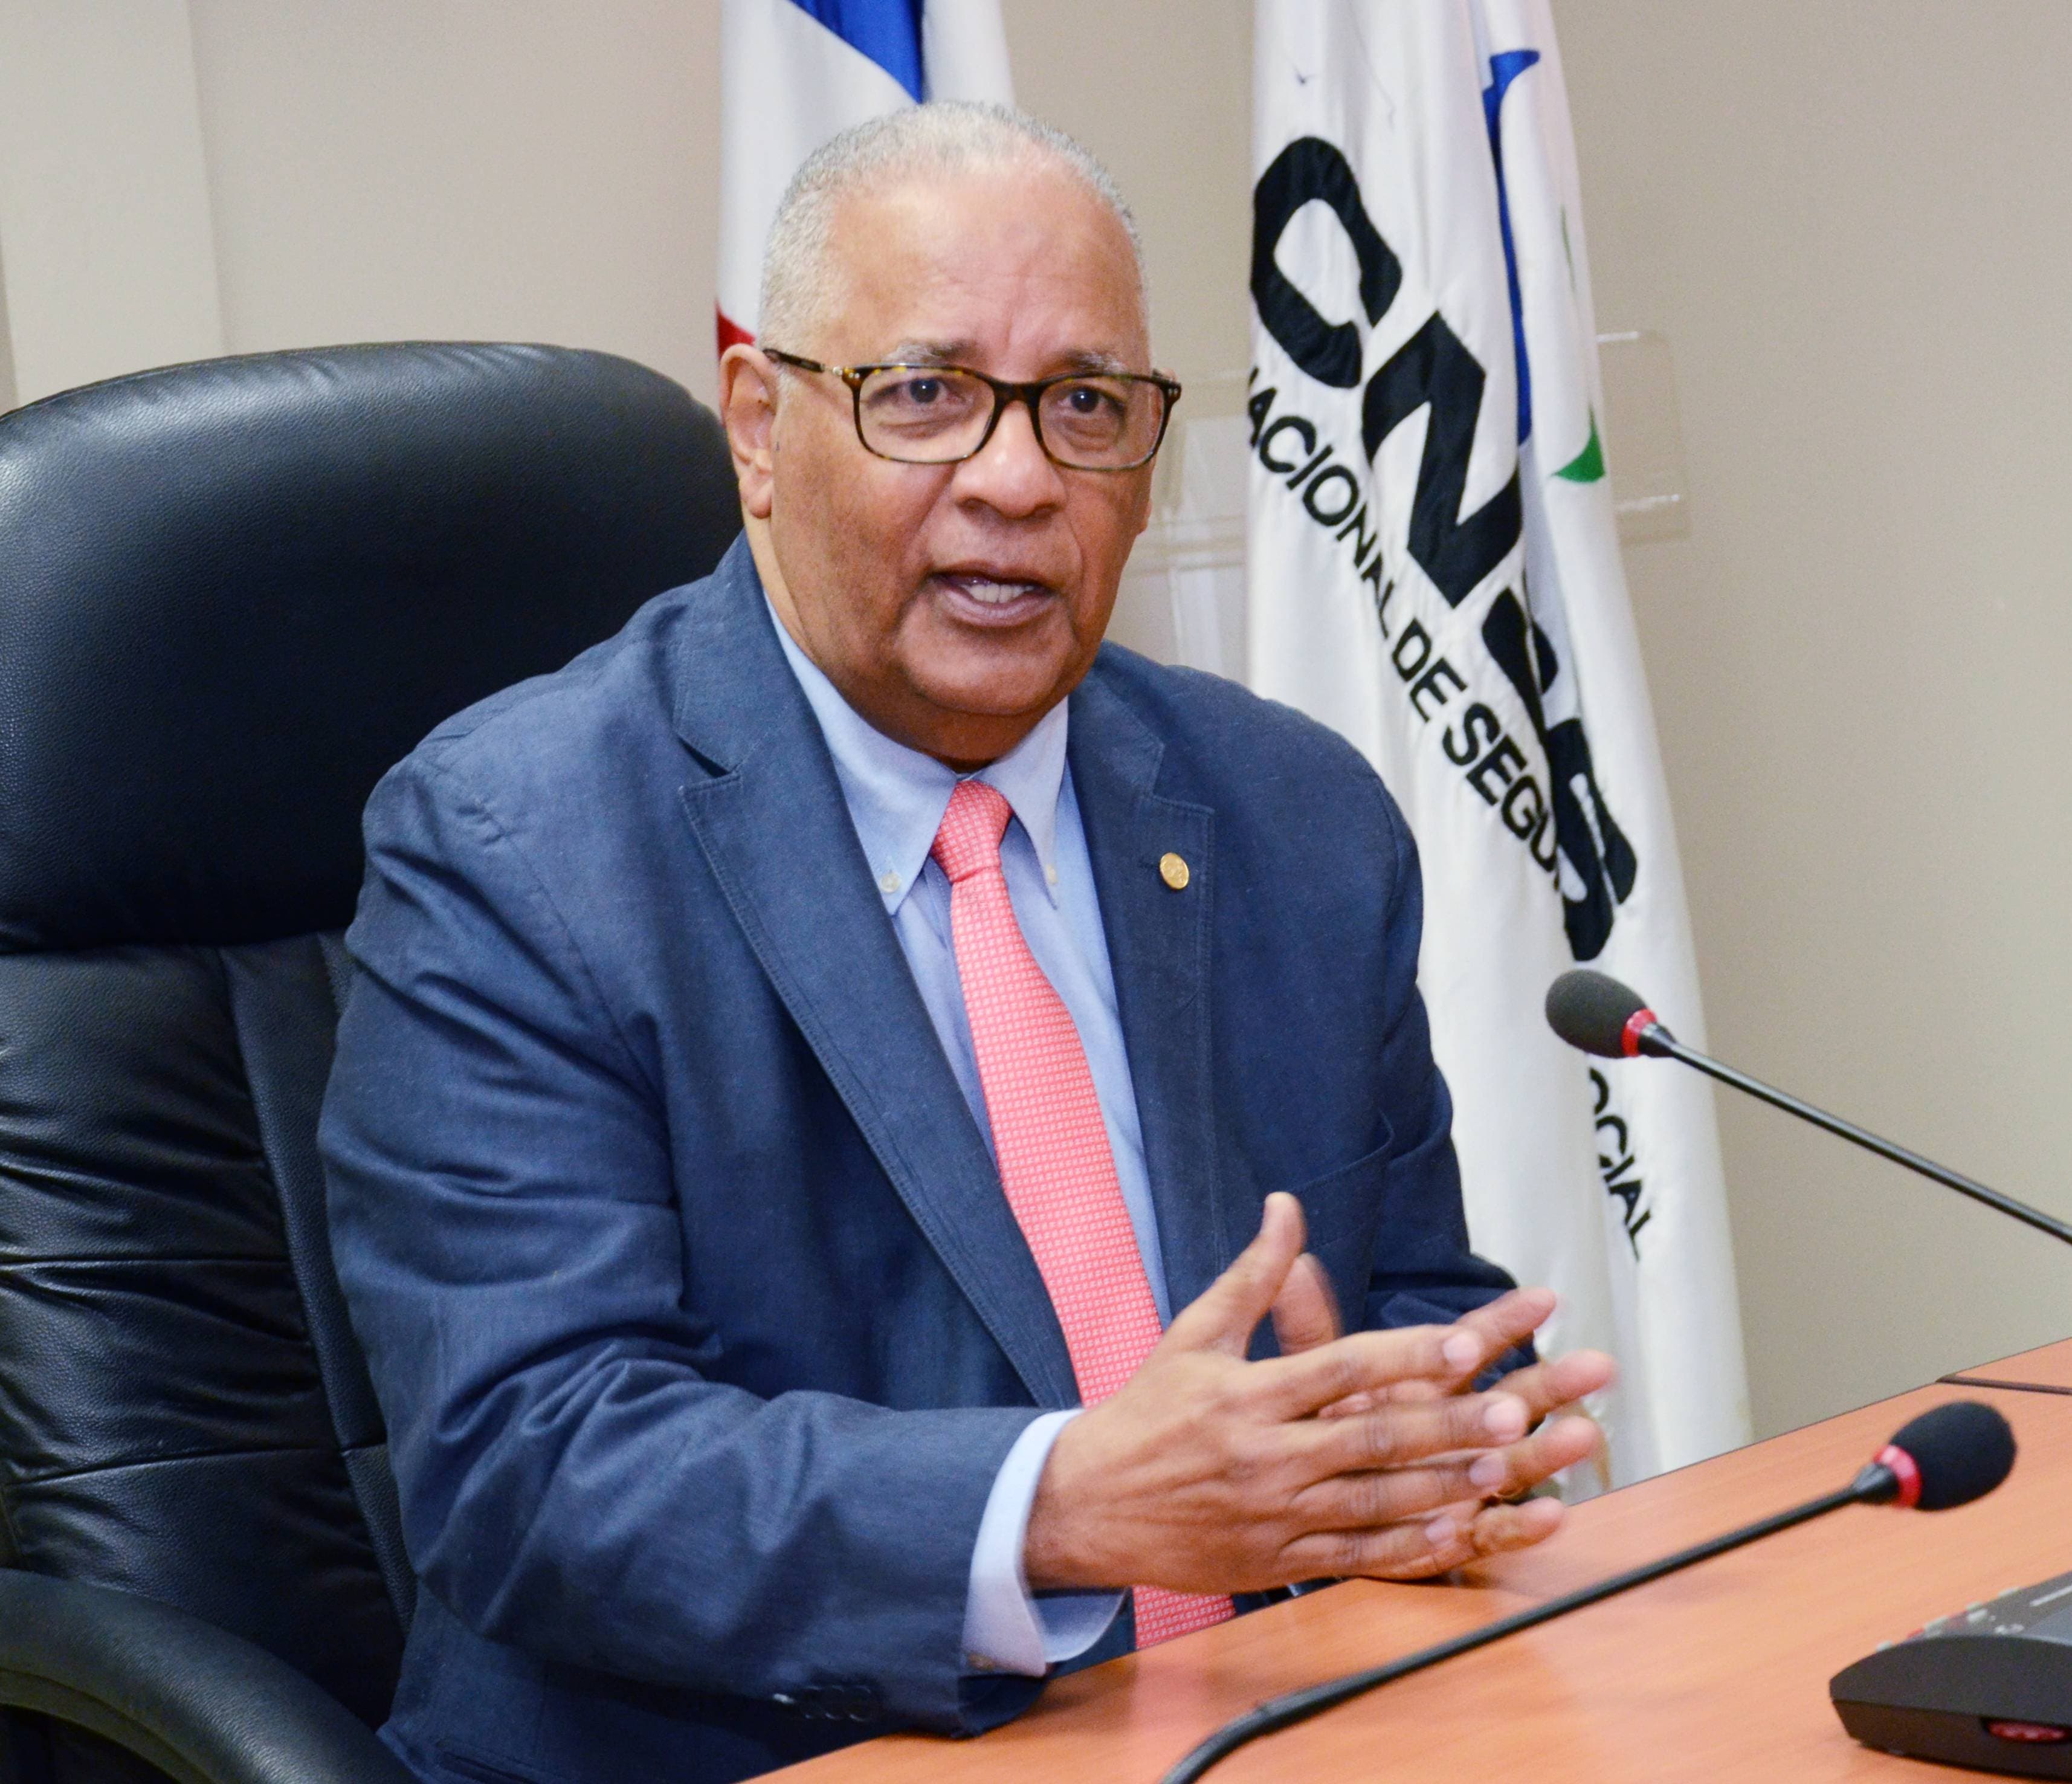 Avances y retos en la protección en salud del Sistema Dominicano de Seguridad Social, según Pérez Modesto